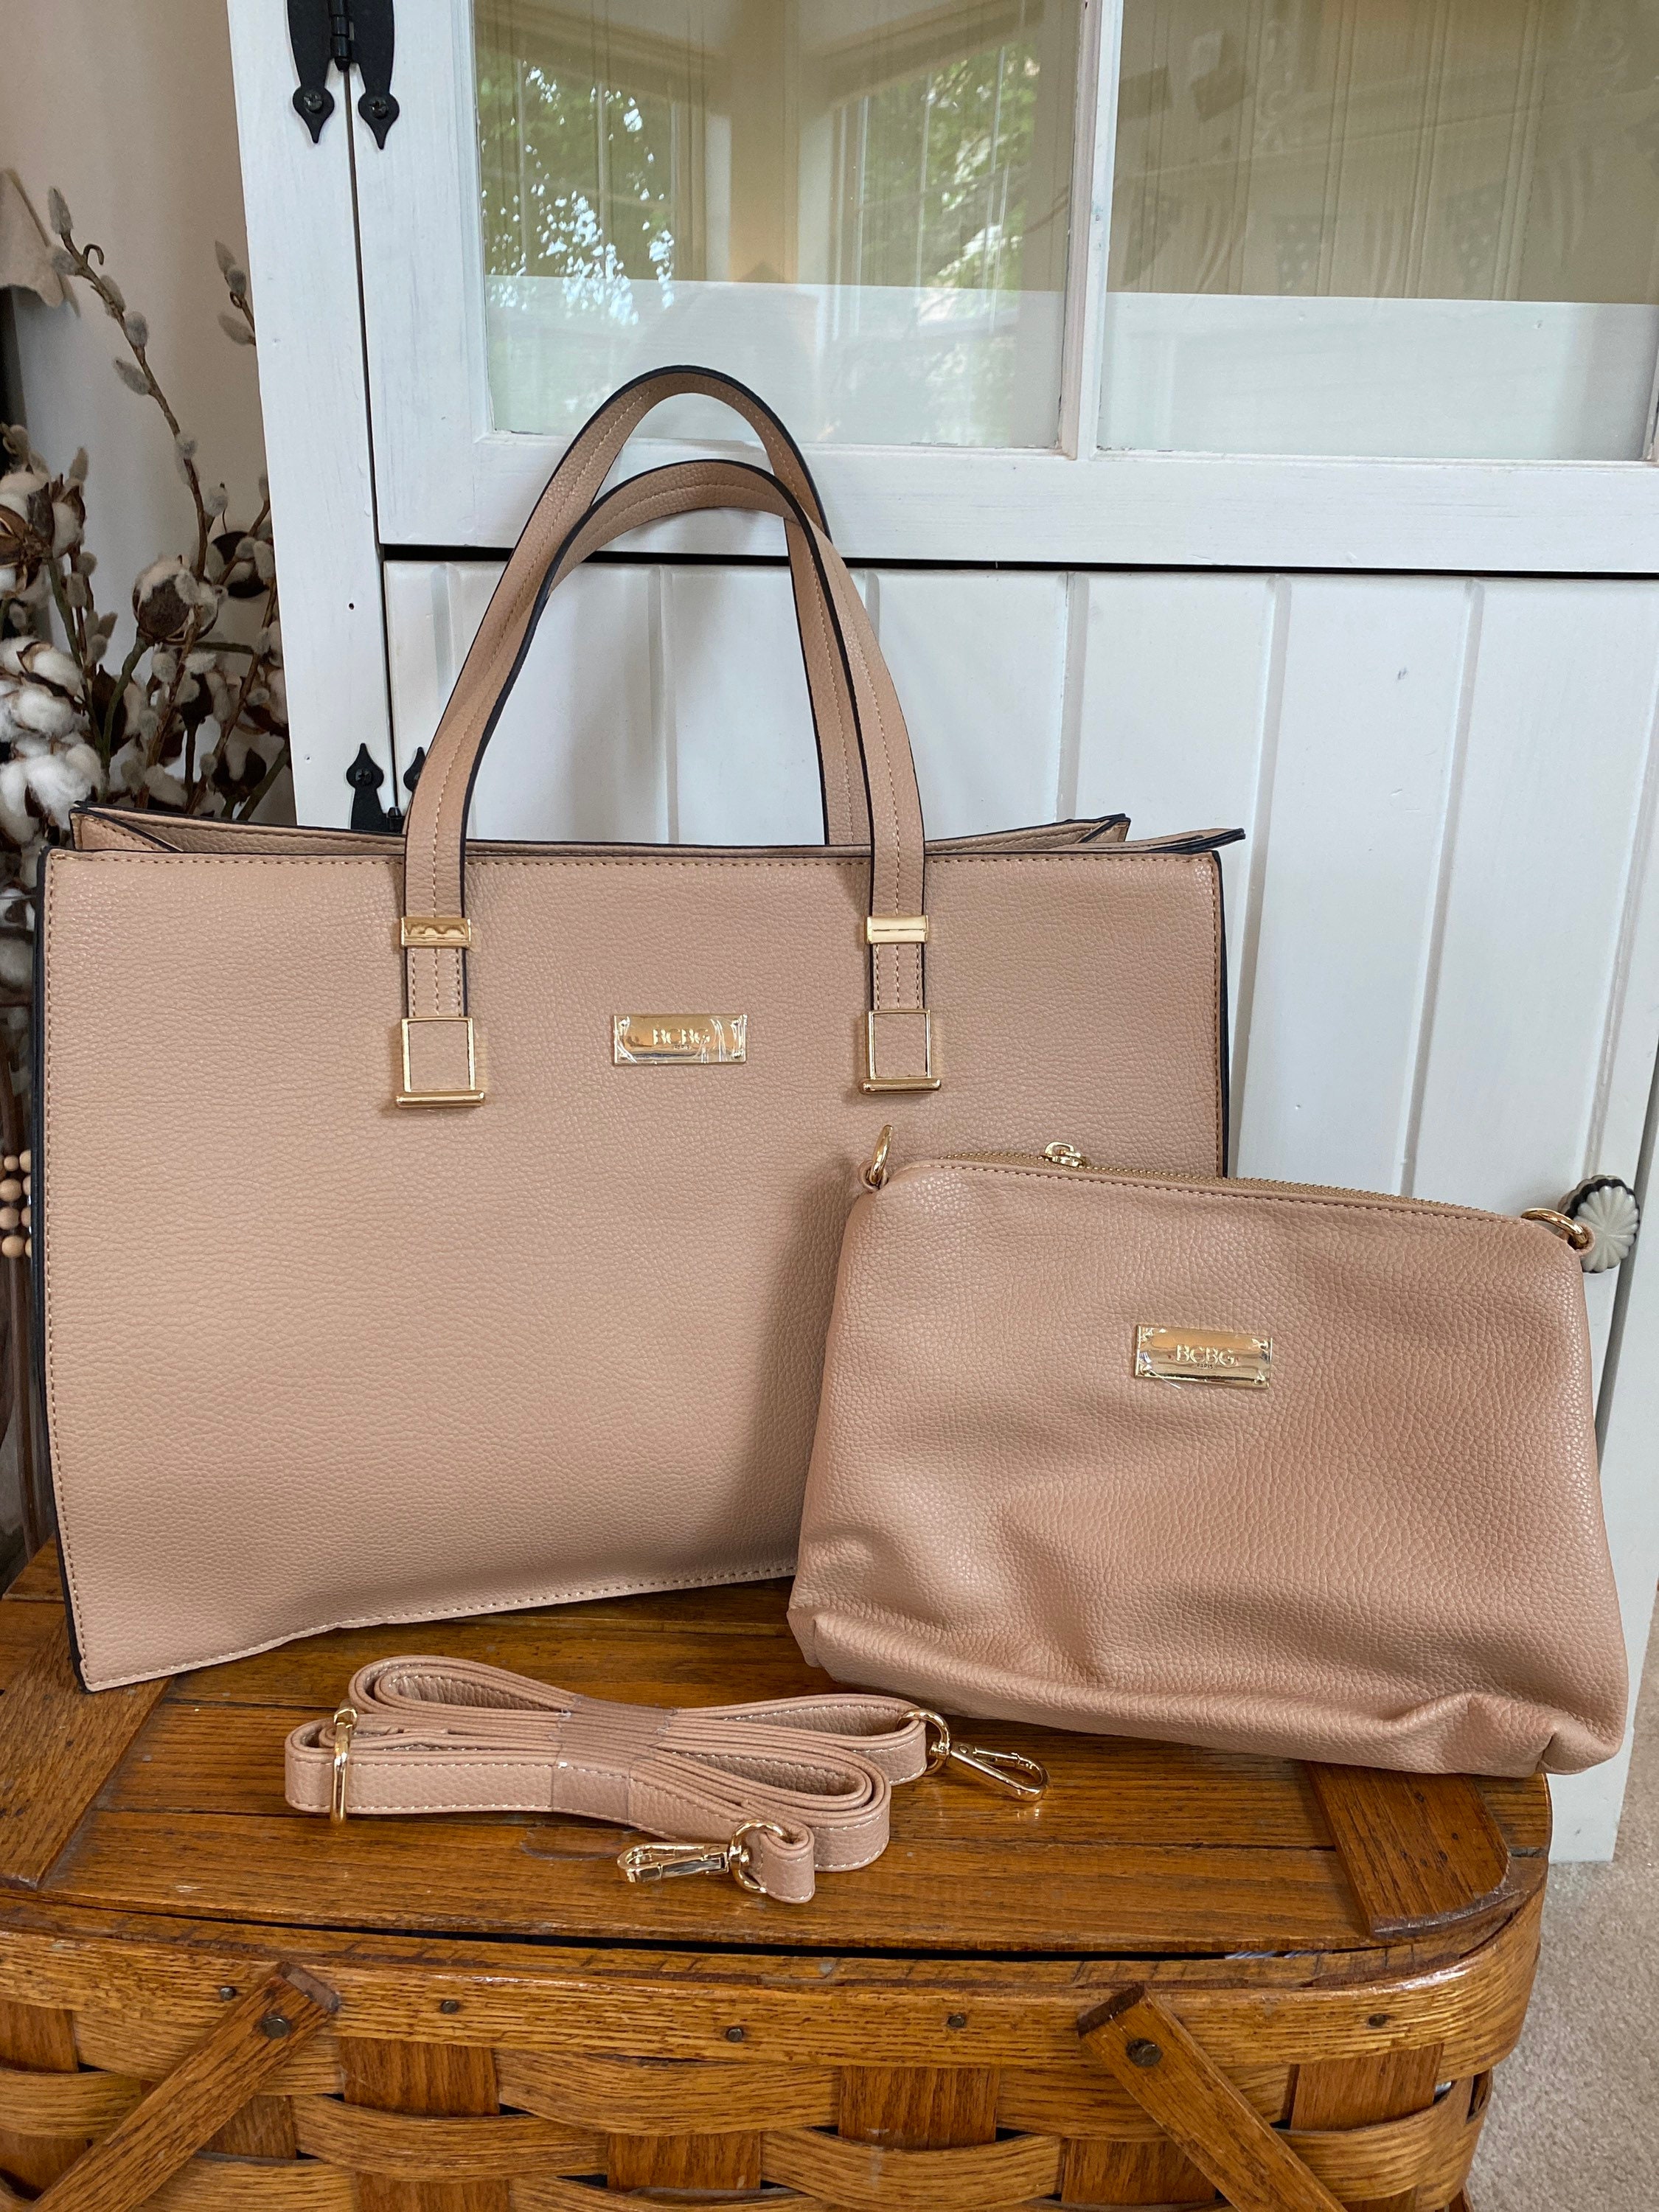 BCBG Handbags | Mercari